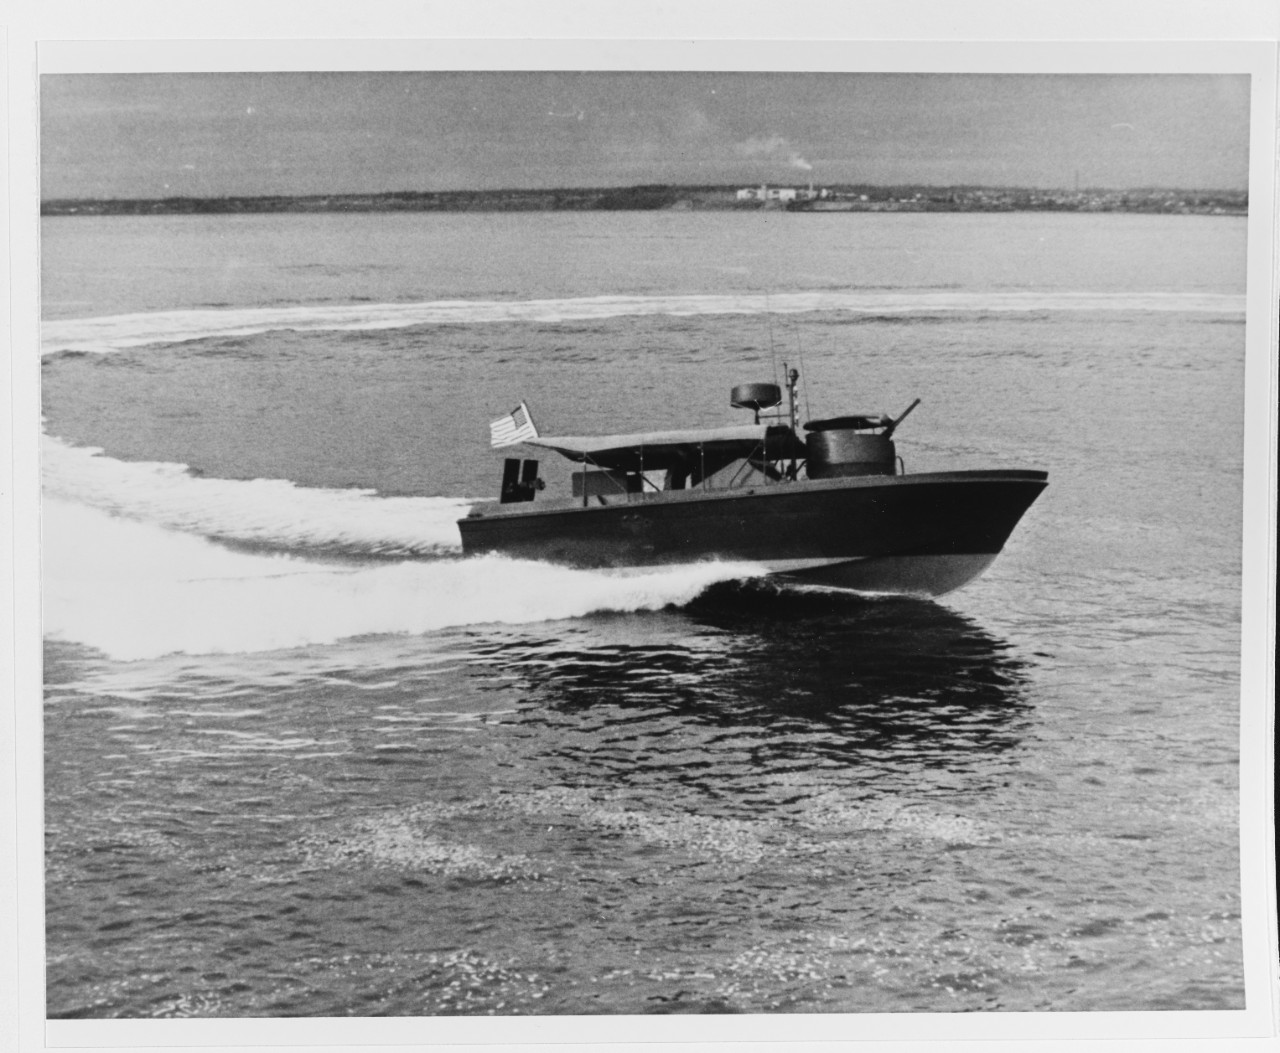 31-foot river patrol boat (PBR), Mark I.